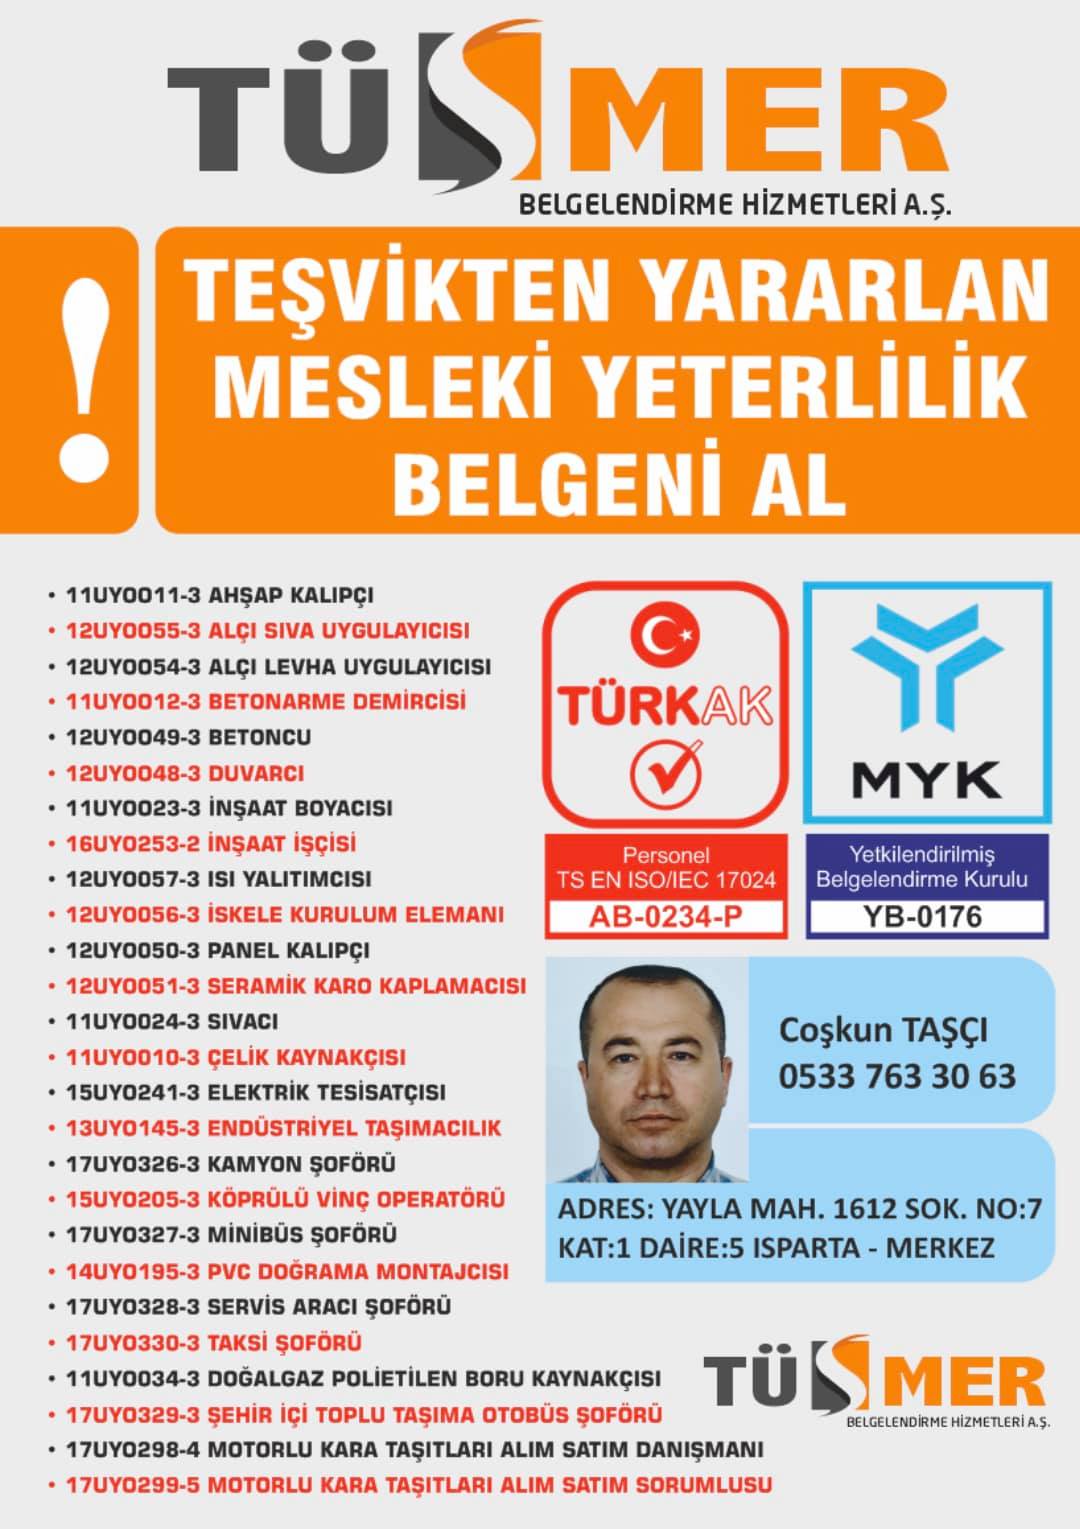 MYK MESLEKİ YETERLİLİK BELGESİ Hasanpaşa Kadıköy İstanbul